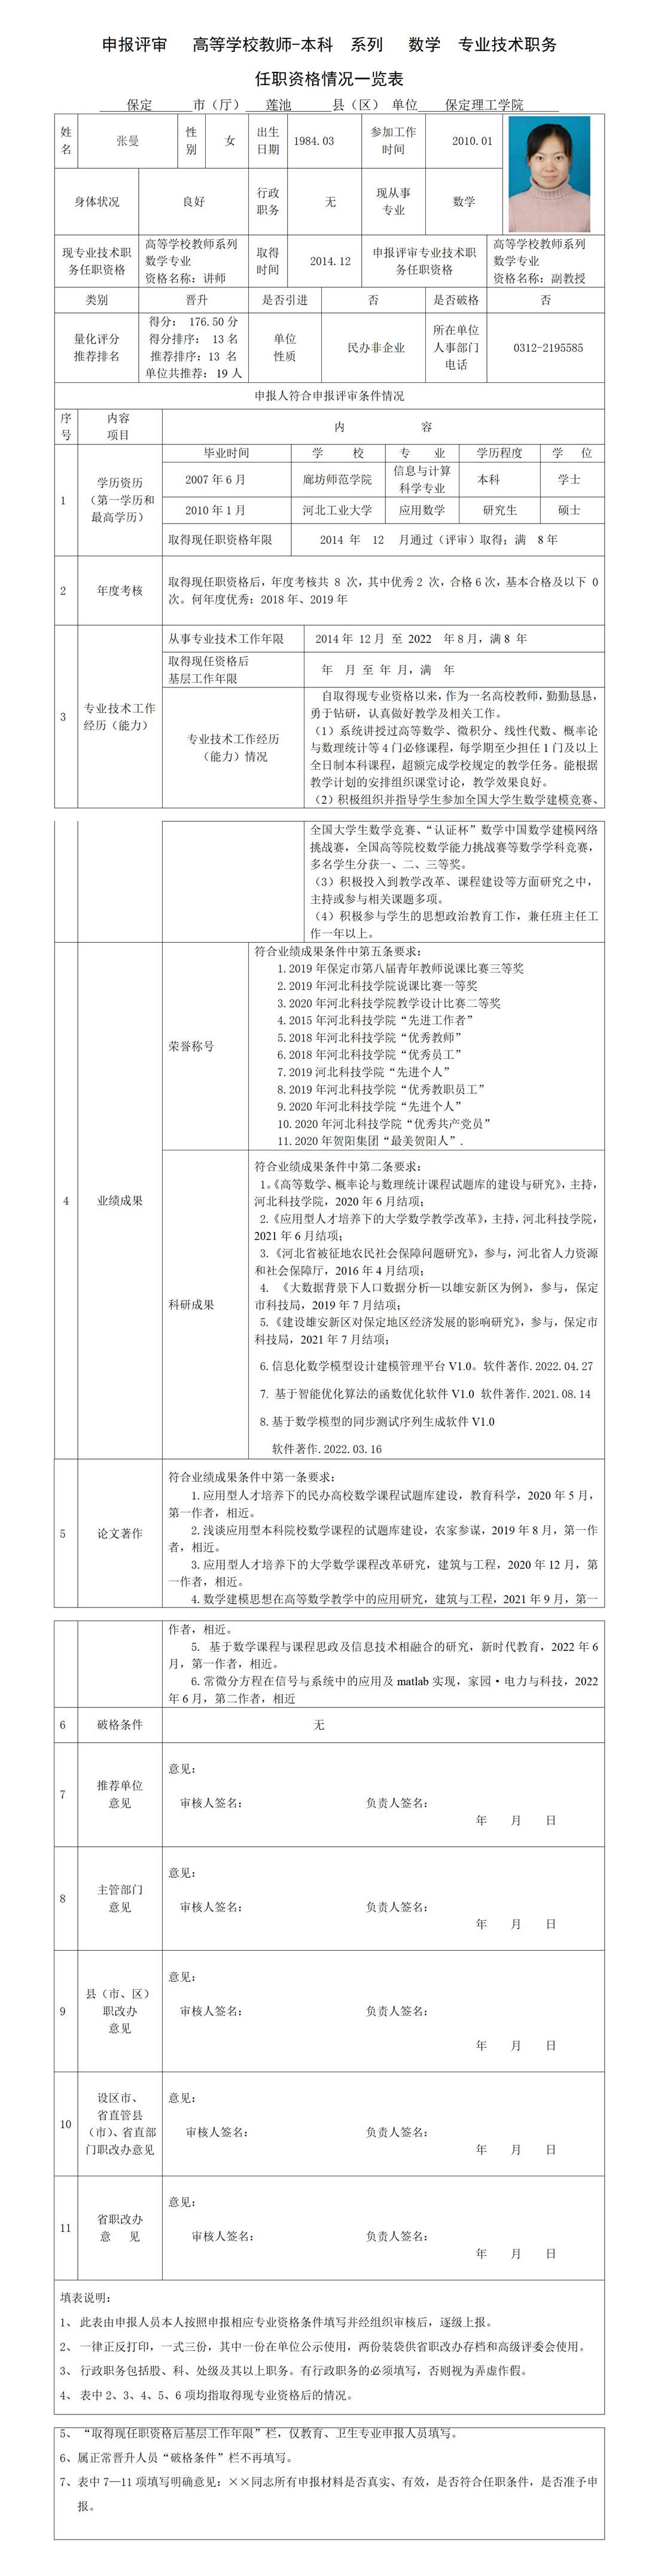 张曼任职资格情况一览表